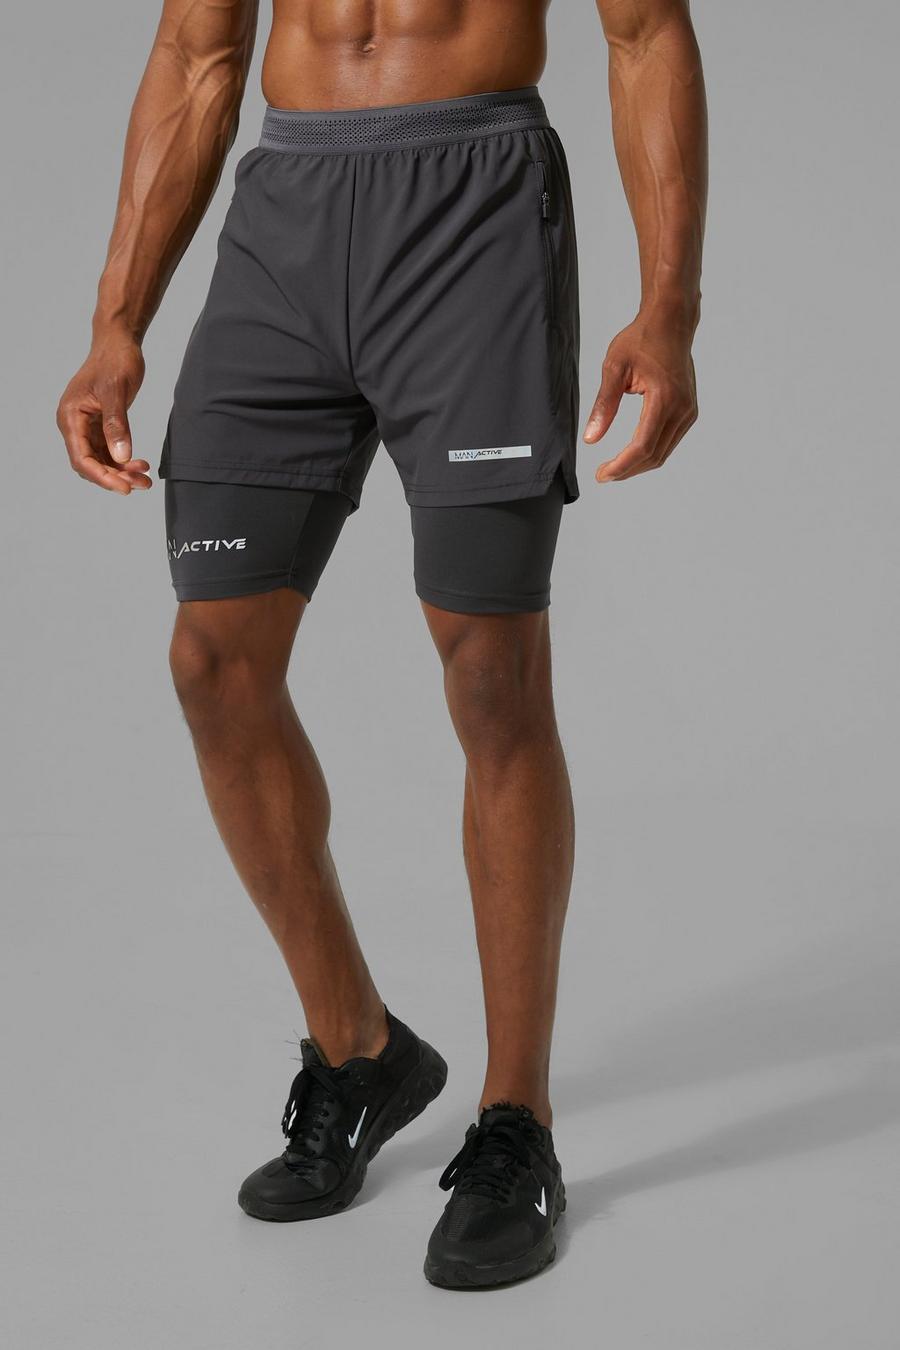 Pantaloncini Man Active 2 in 1 con stampa e spacco sul fondo, Charcoal grigio